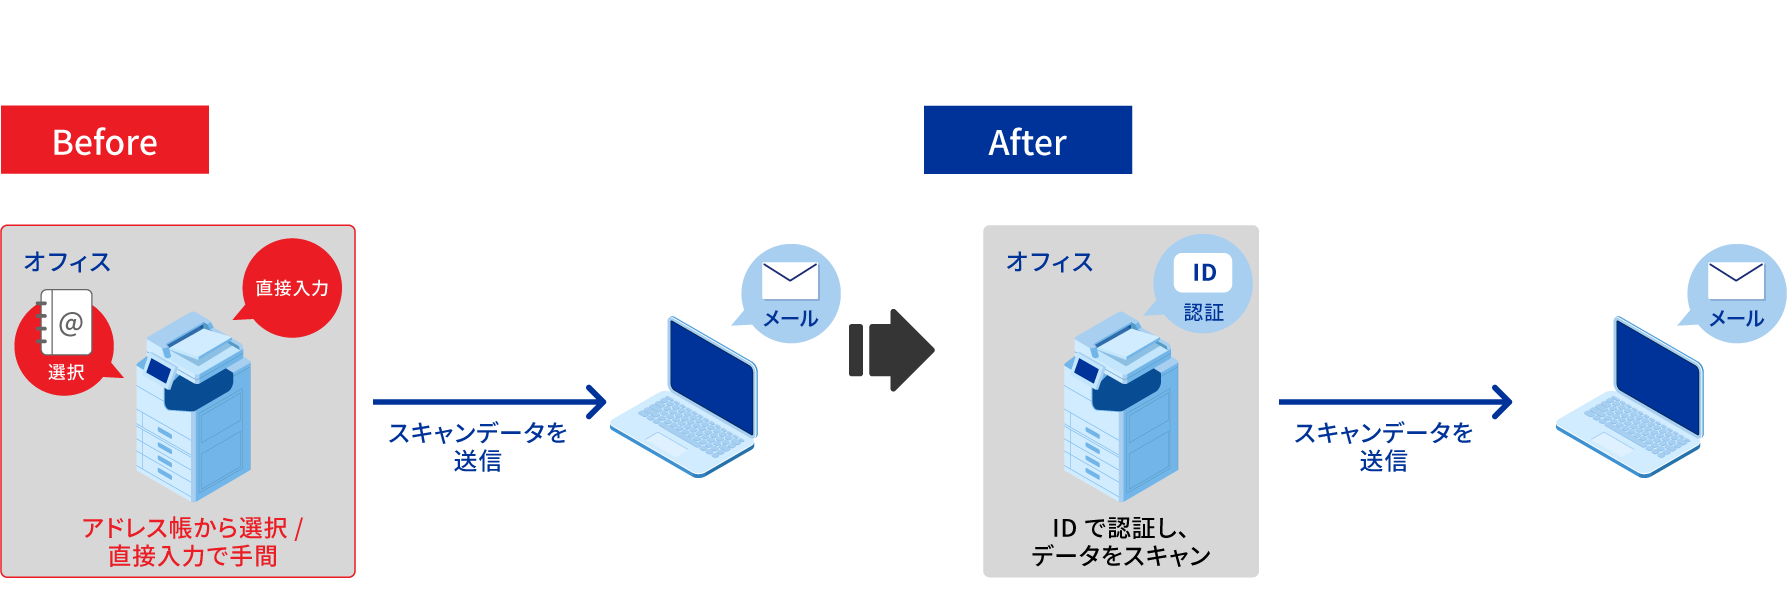 IDカード認証によって、スキャンしたデータを宛先入力することなく自分のメールアドレスに送信